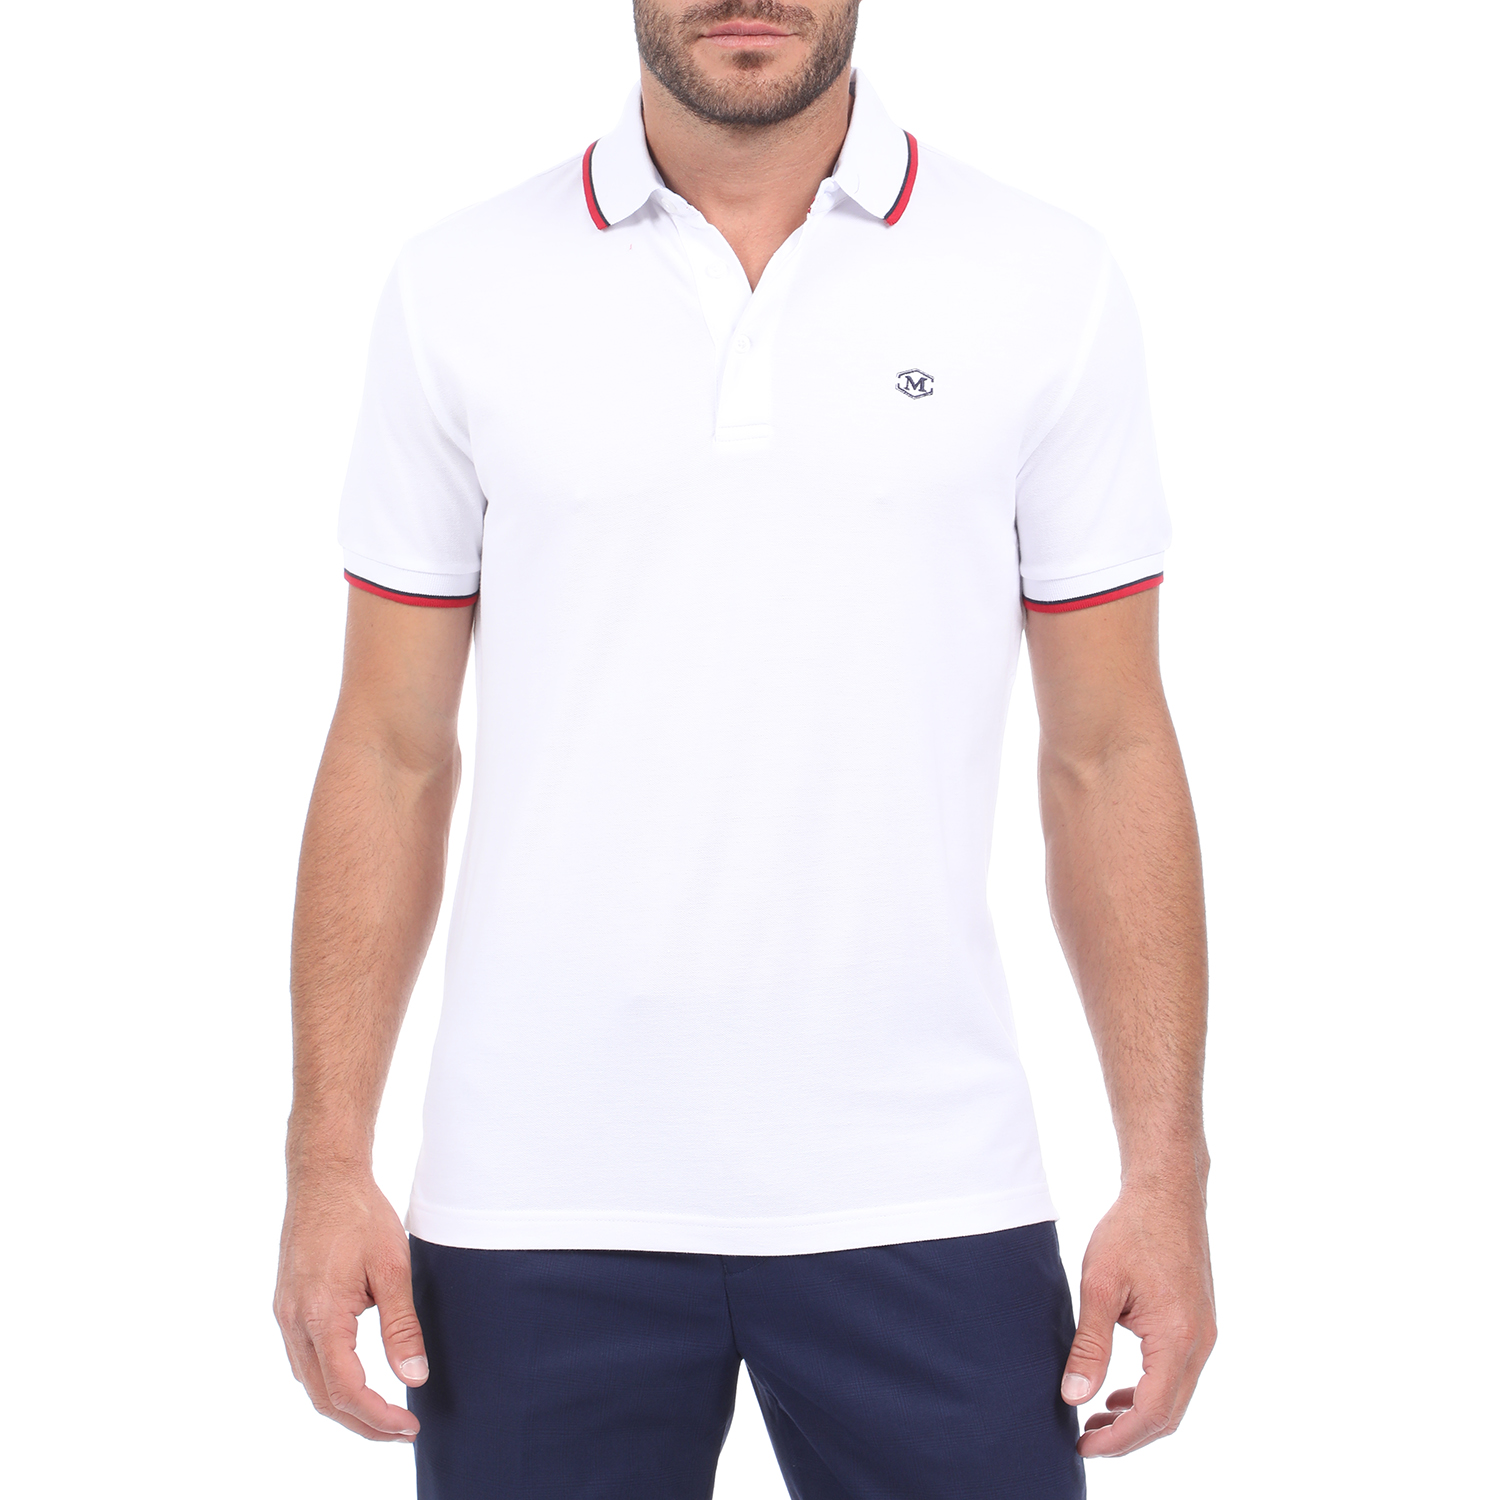 Ανδρικά/Ρούχα/Μπλούζες/Πόλο MARTIN & CO - Ανδρική polo μπλούζα MARTIN & CO λευκή